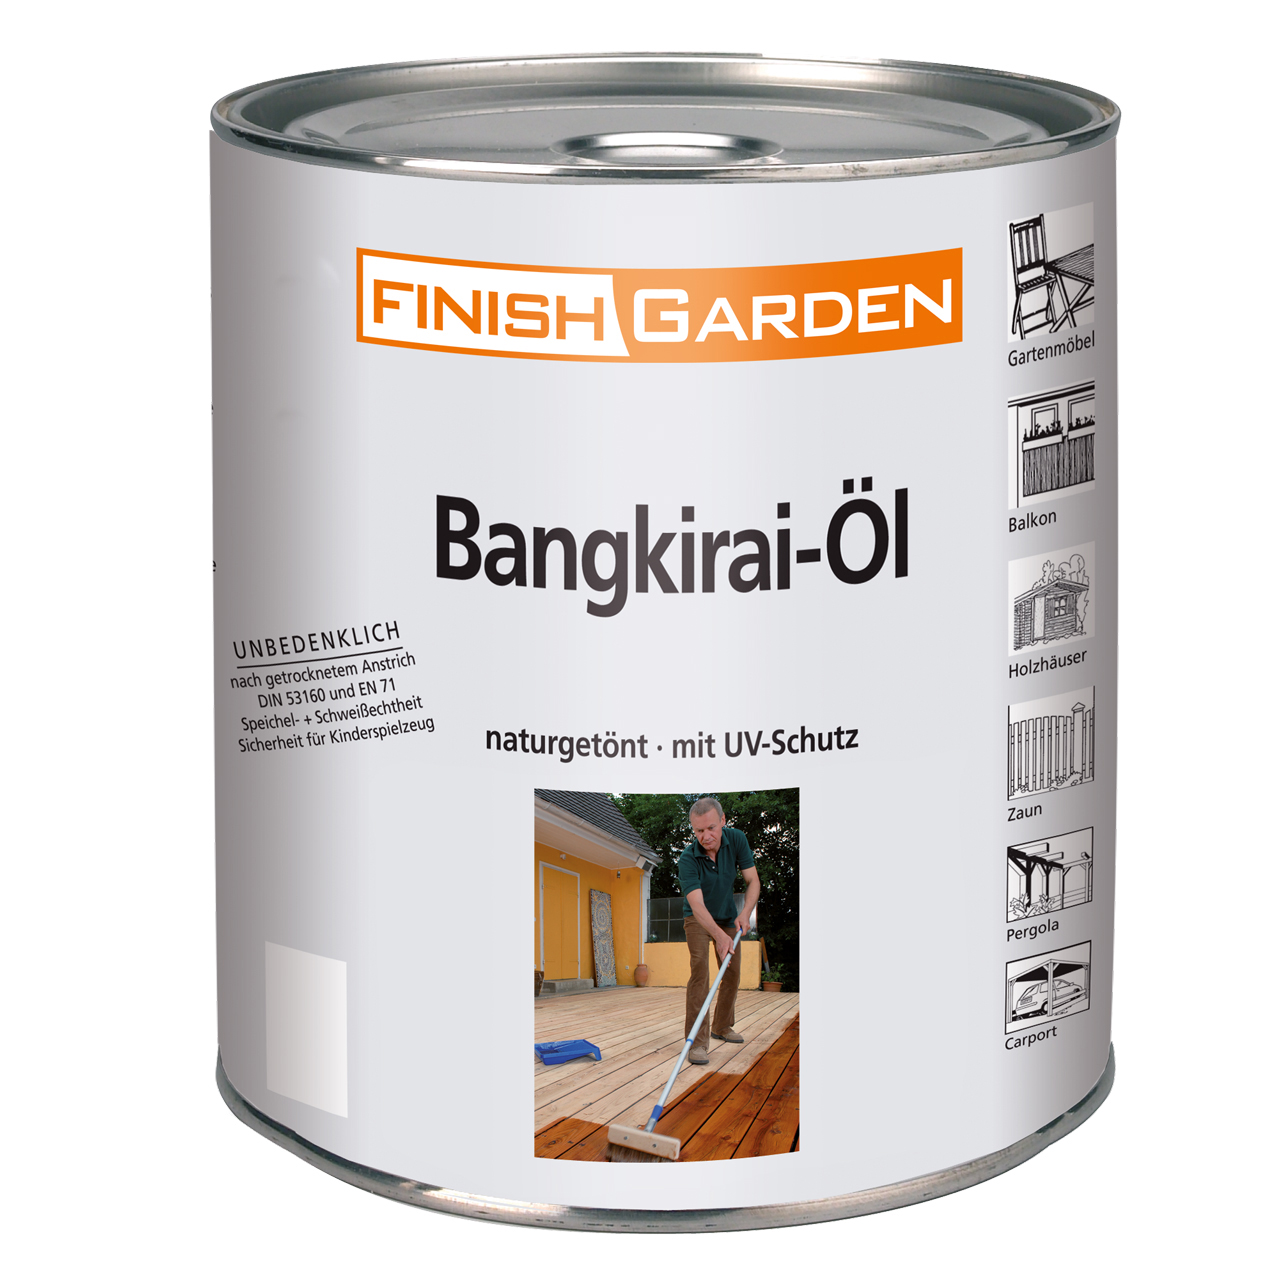 Finish Garden Bangkirai-Öl, 5 l